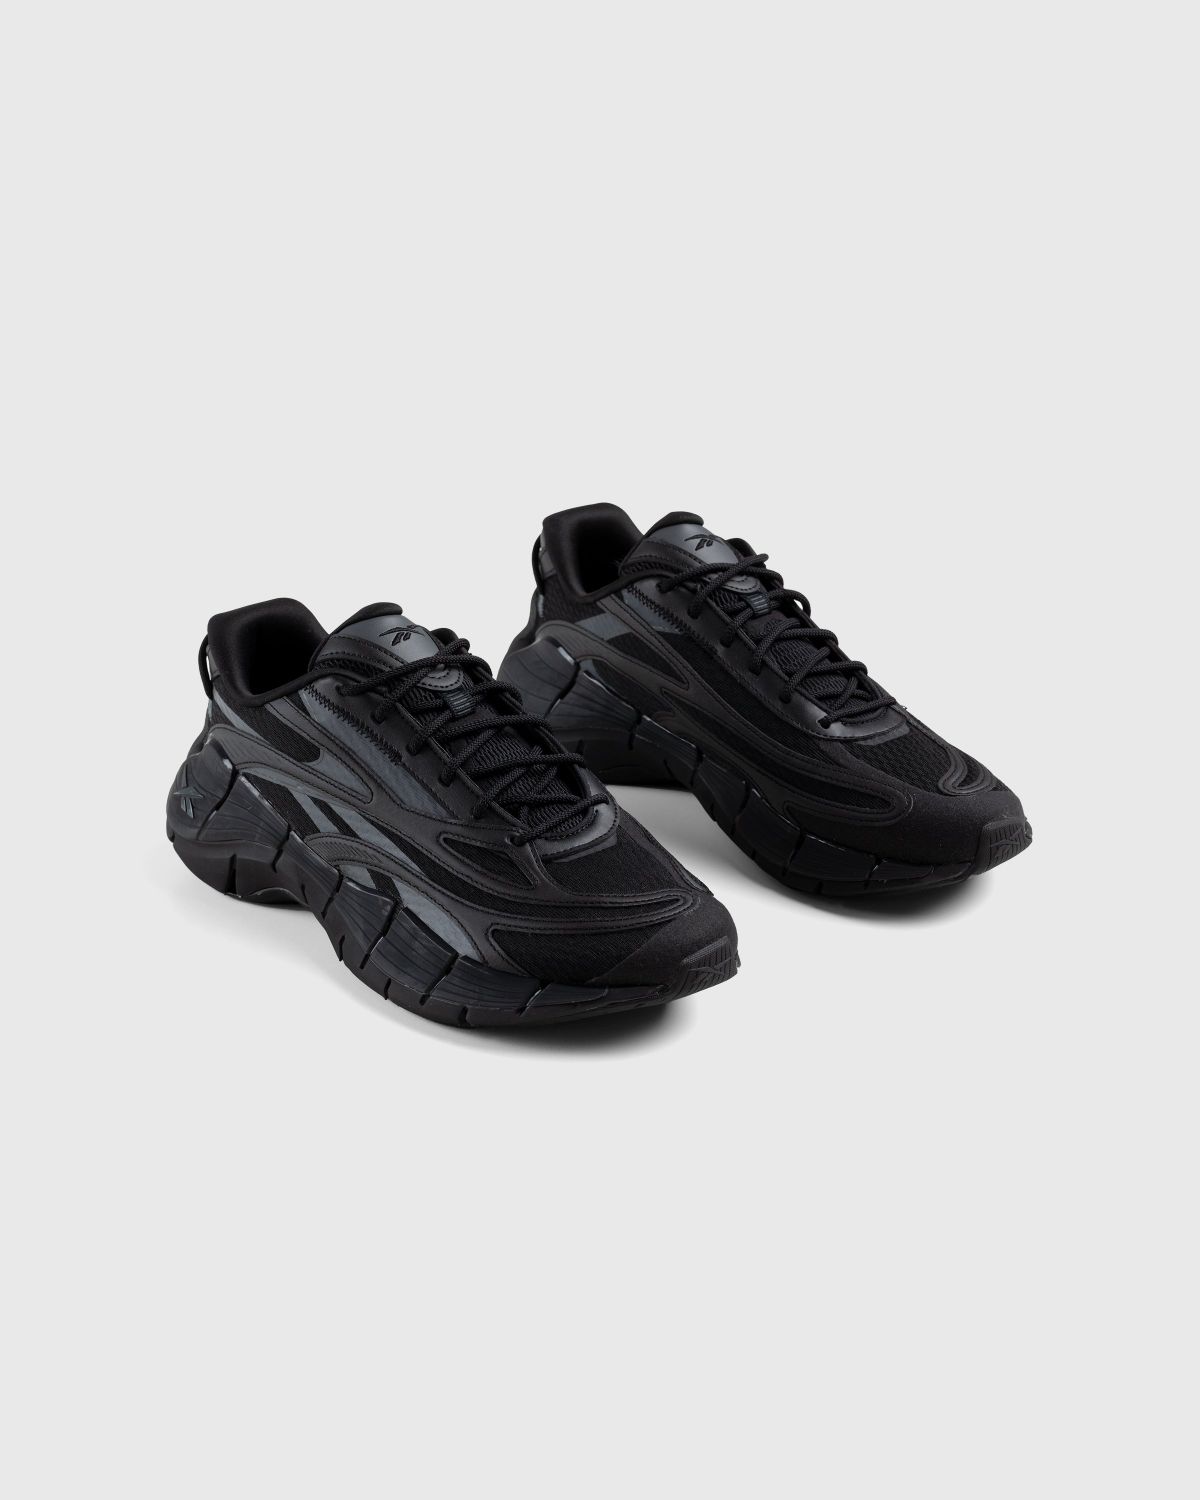 Reebok – Zig Kinetica 2.5 Black - Sneakers - Black - Image 3